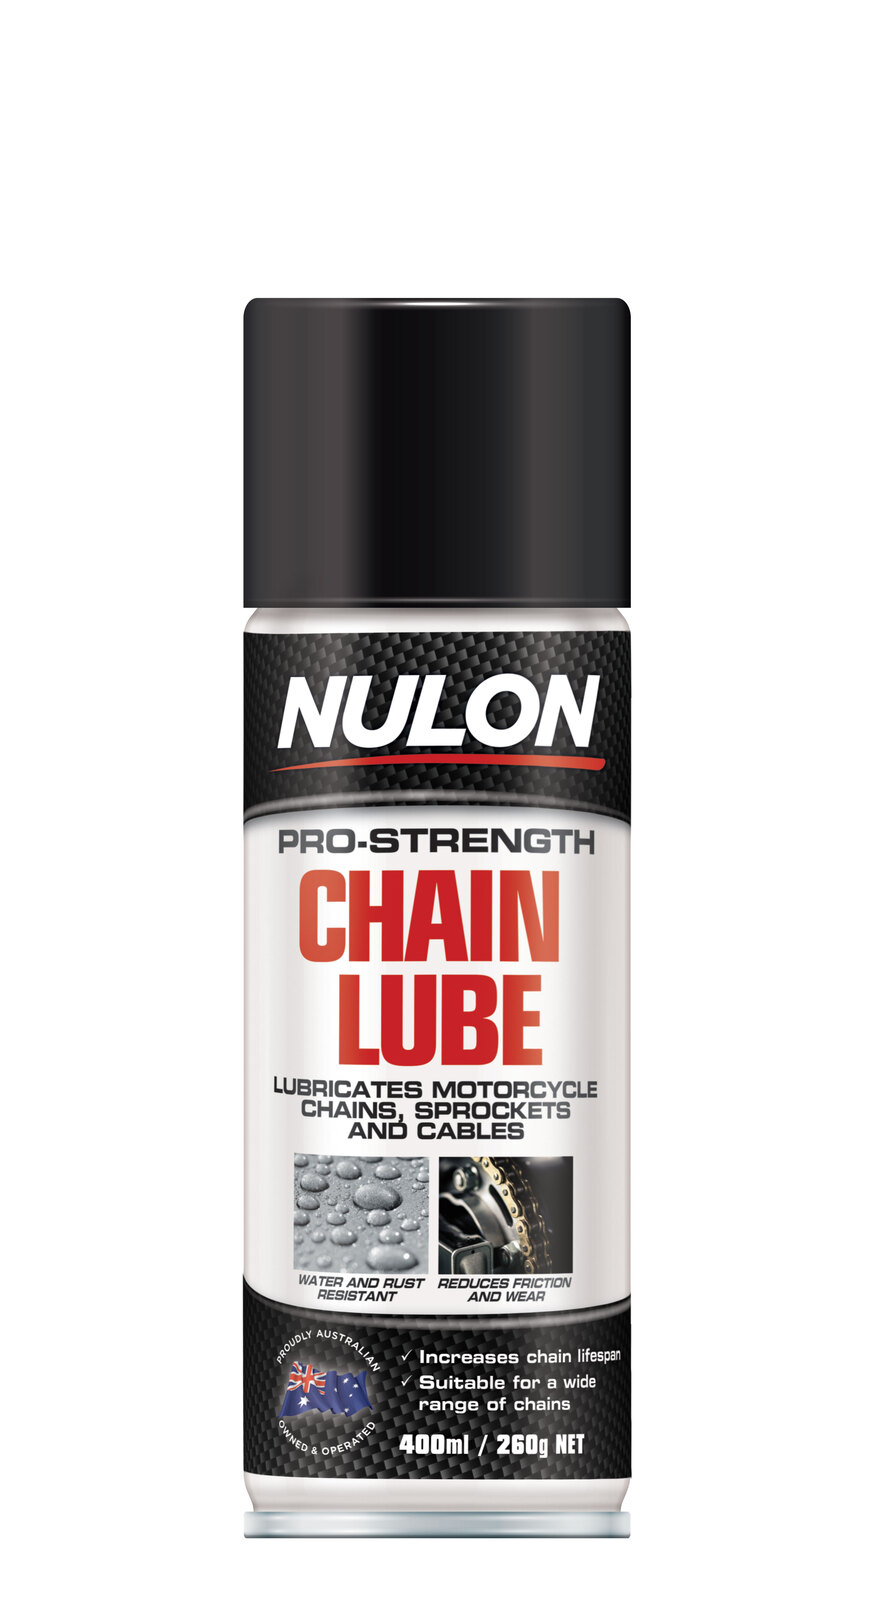 NULON 400ml Chain Lube, Each